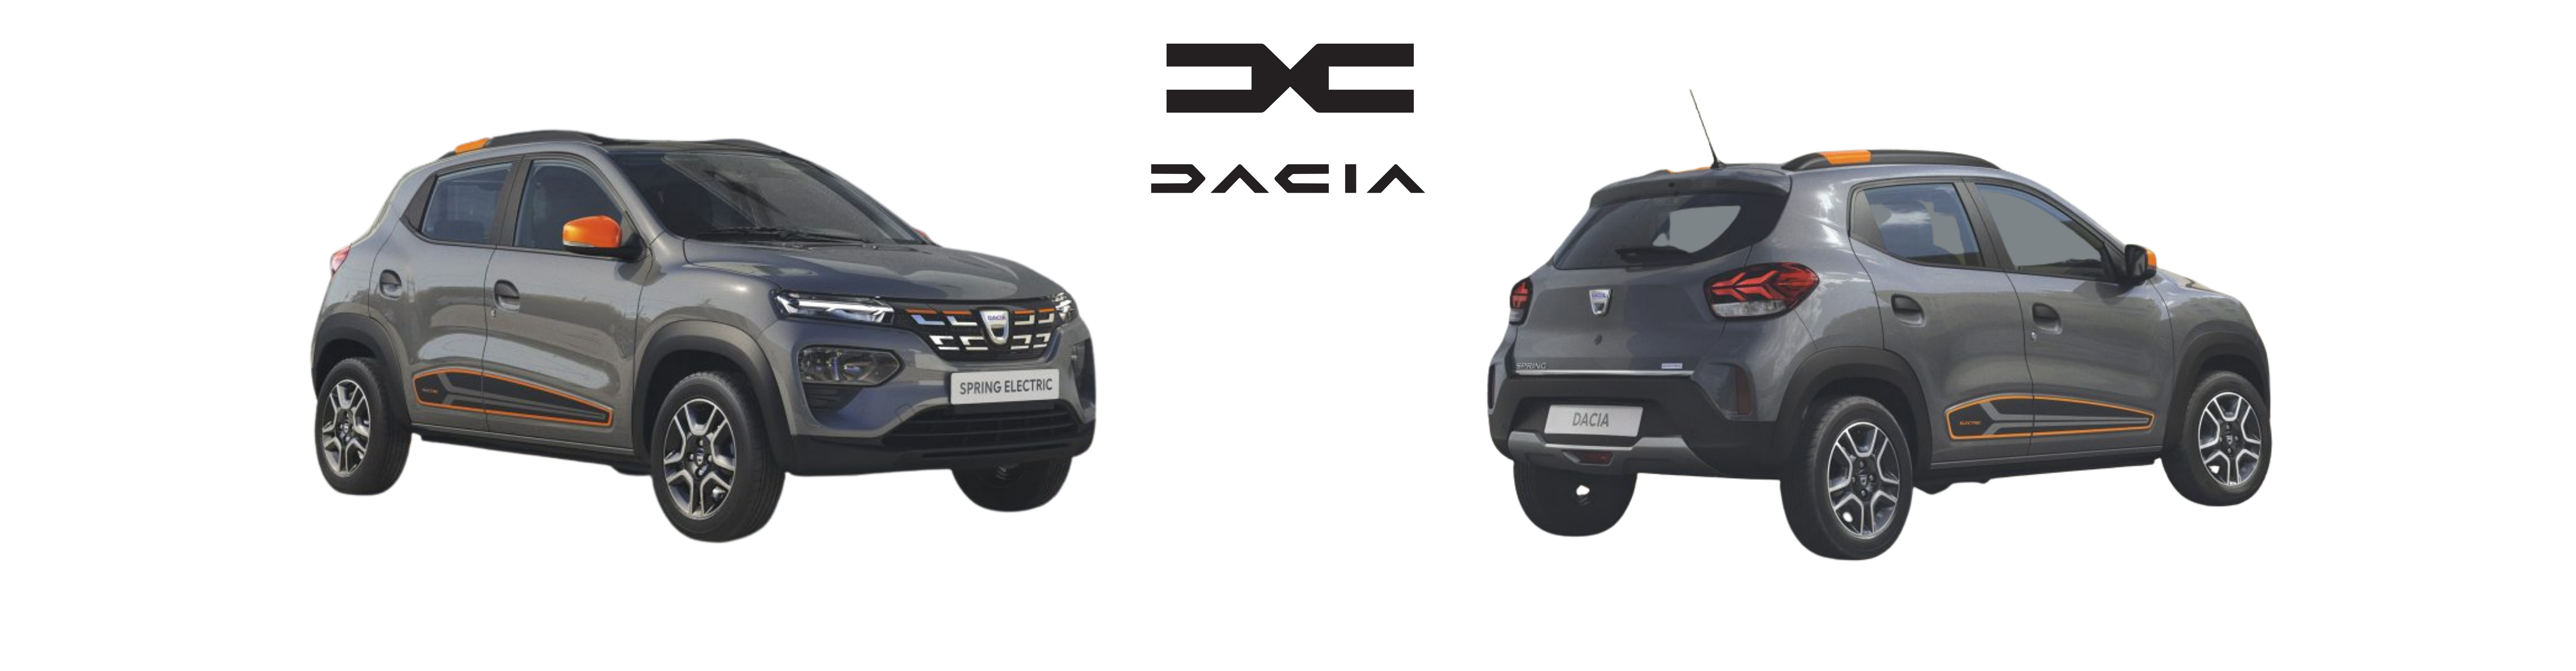 Nouveaux modèles de voitures Dacia